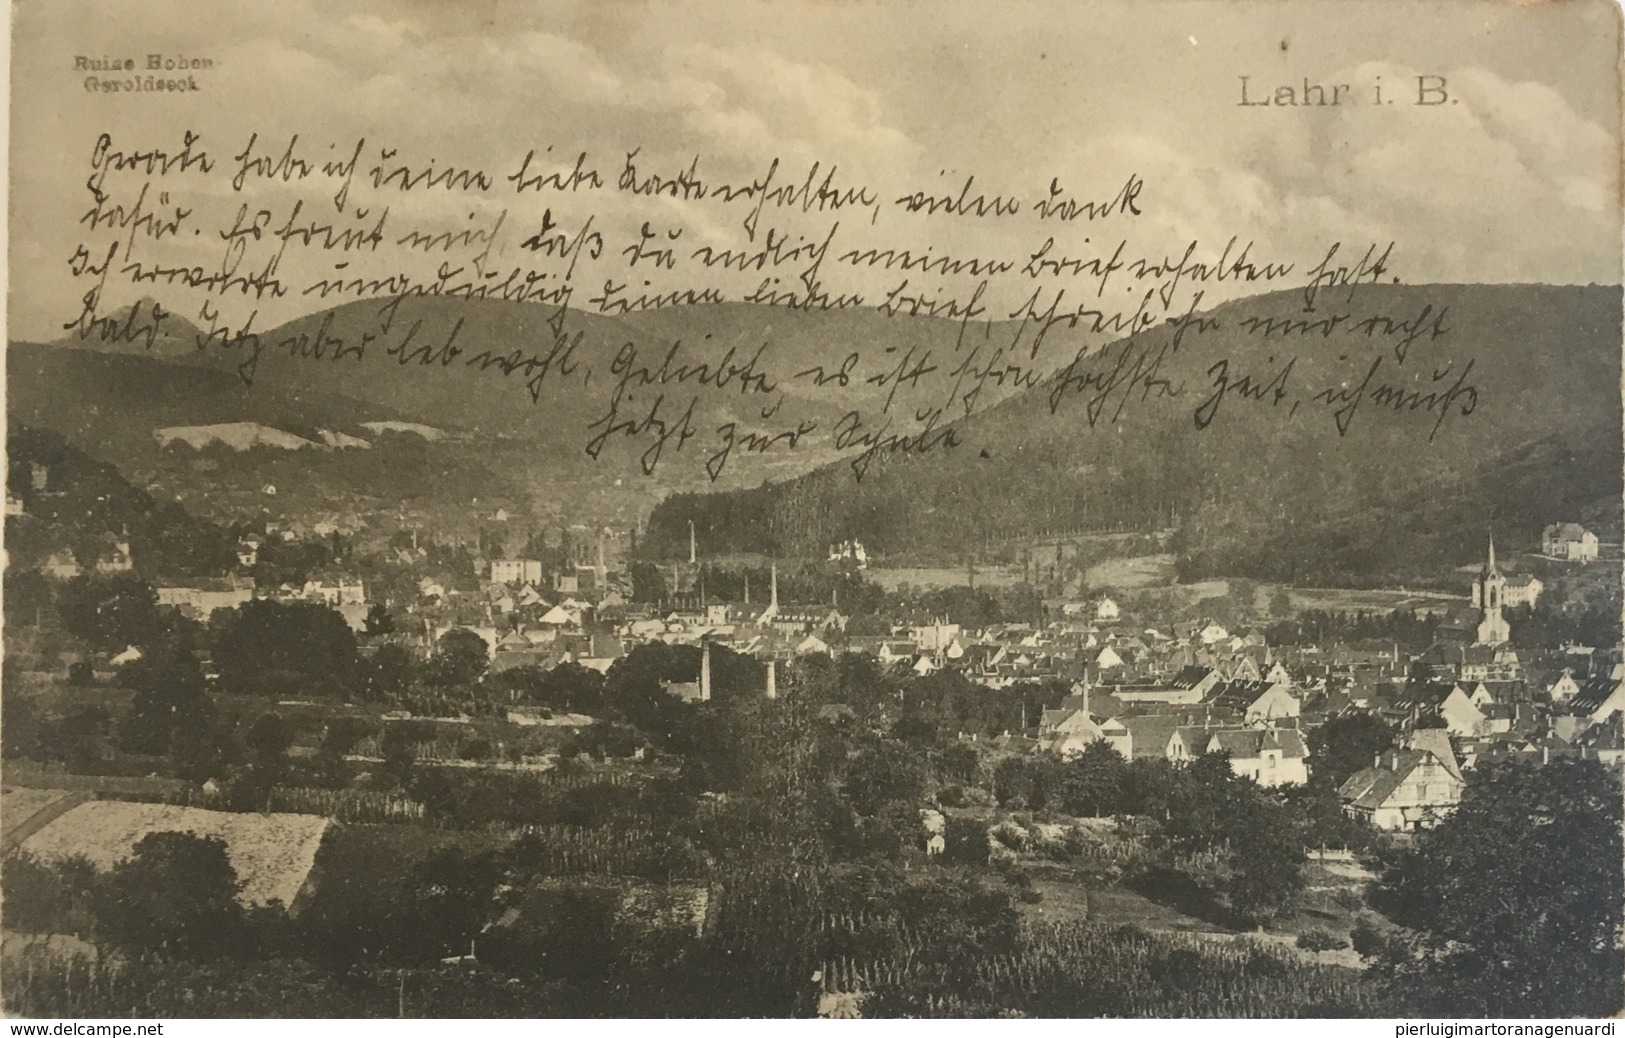 Lahr I. B. 04 - Ruine Hohen Garoldeck - Lahr